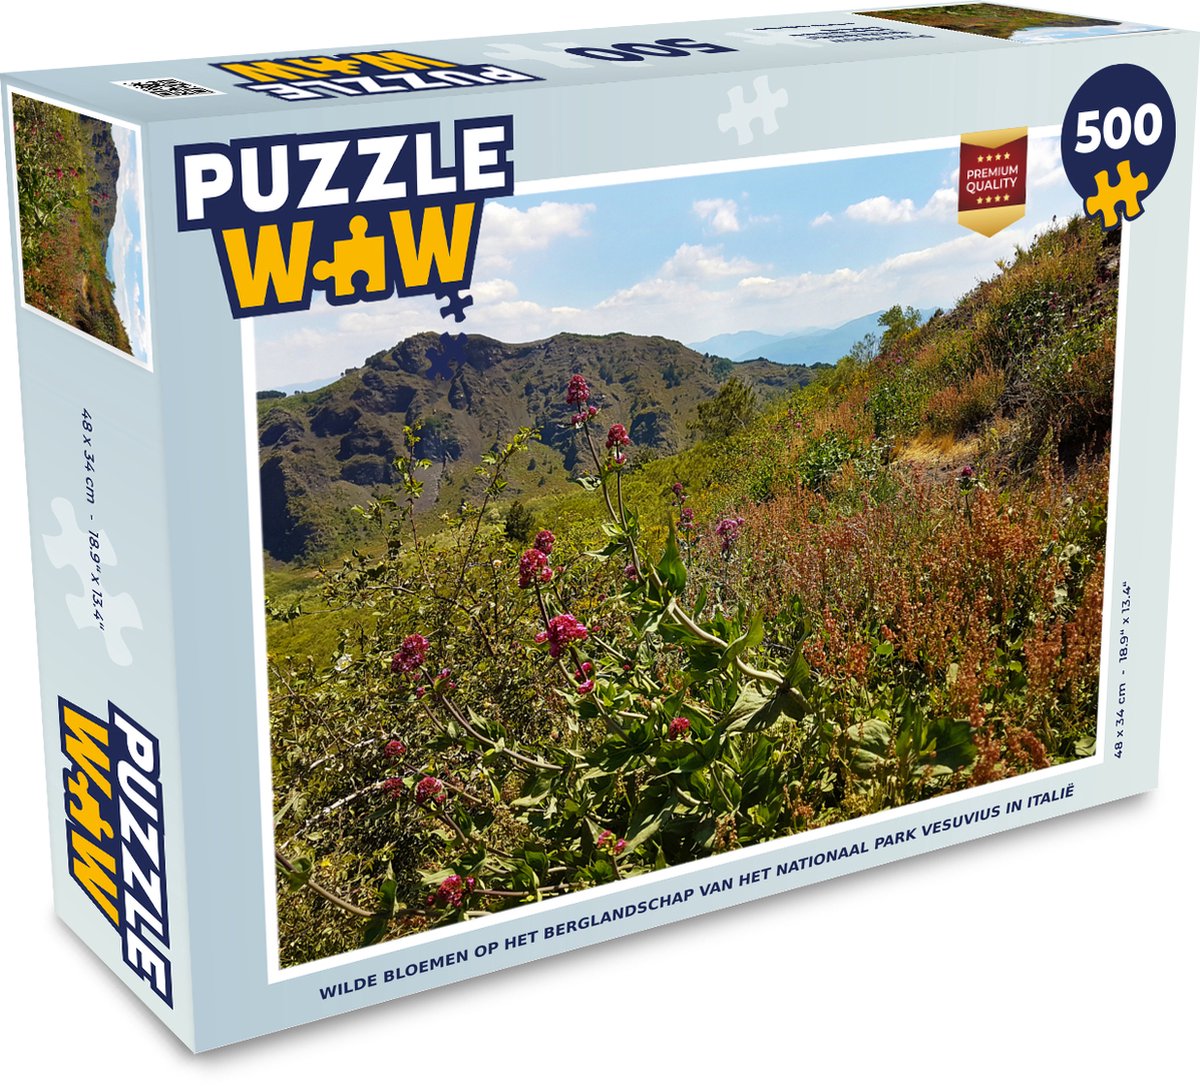 Afbeelding van product Puzzel 500 stukjes Nationaal Park Vesuvius - Wilde bloemen op het berglandschap van het Nationaal park Vesuvius in Italië - PuzzleWow heeft +100000 puzzels